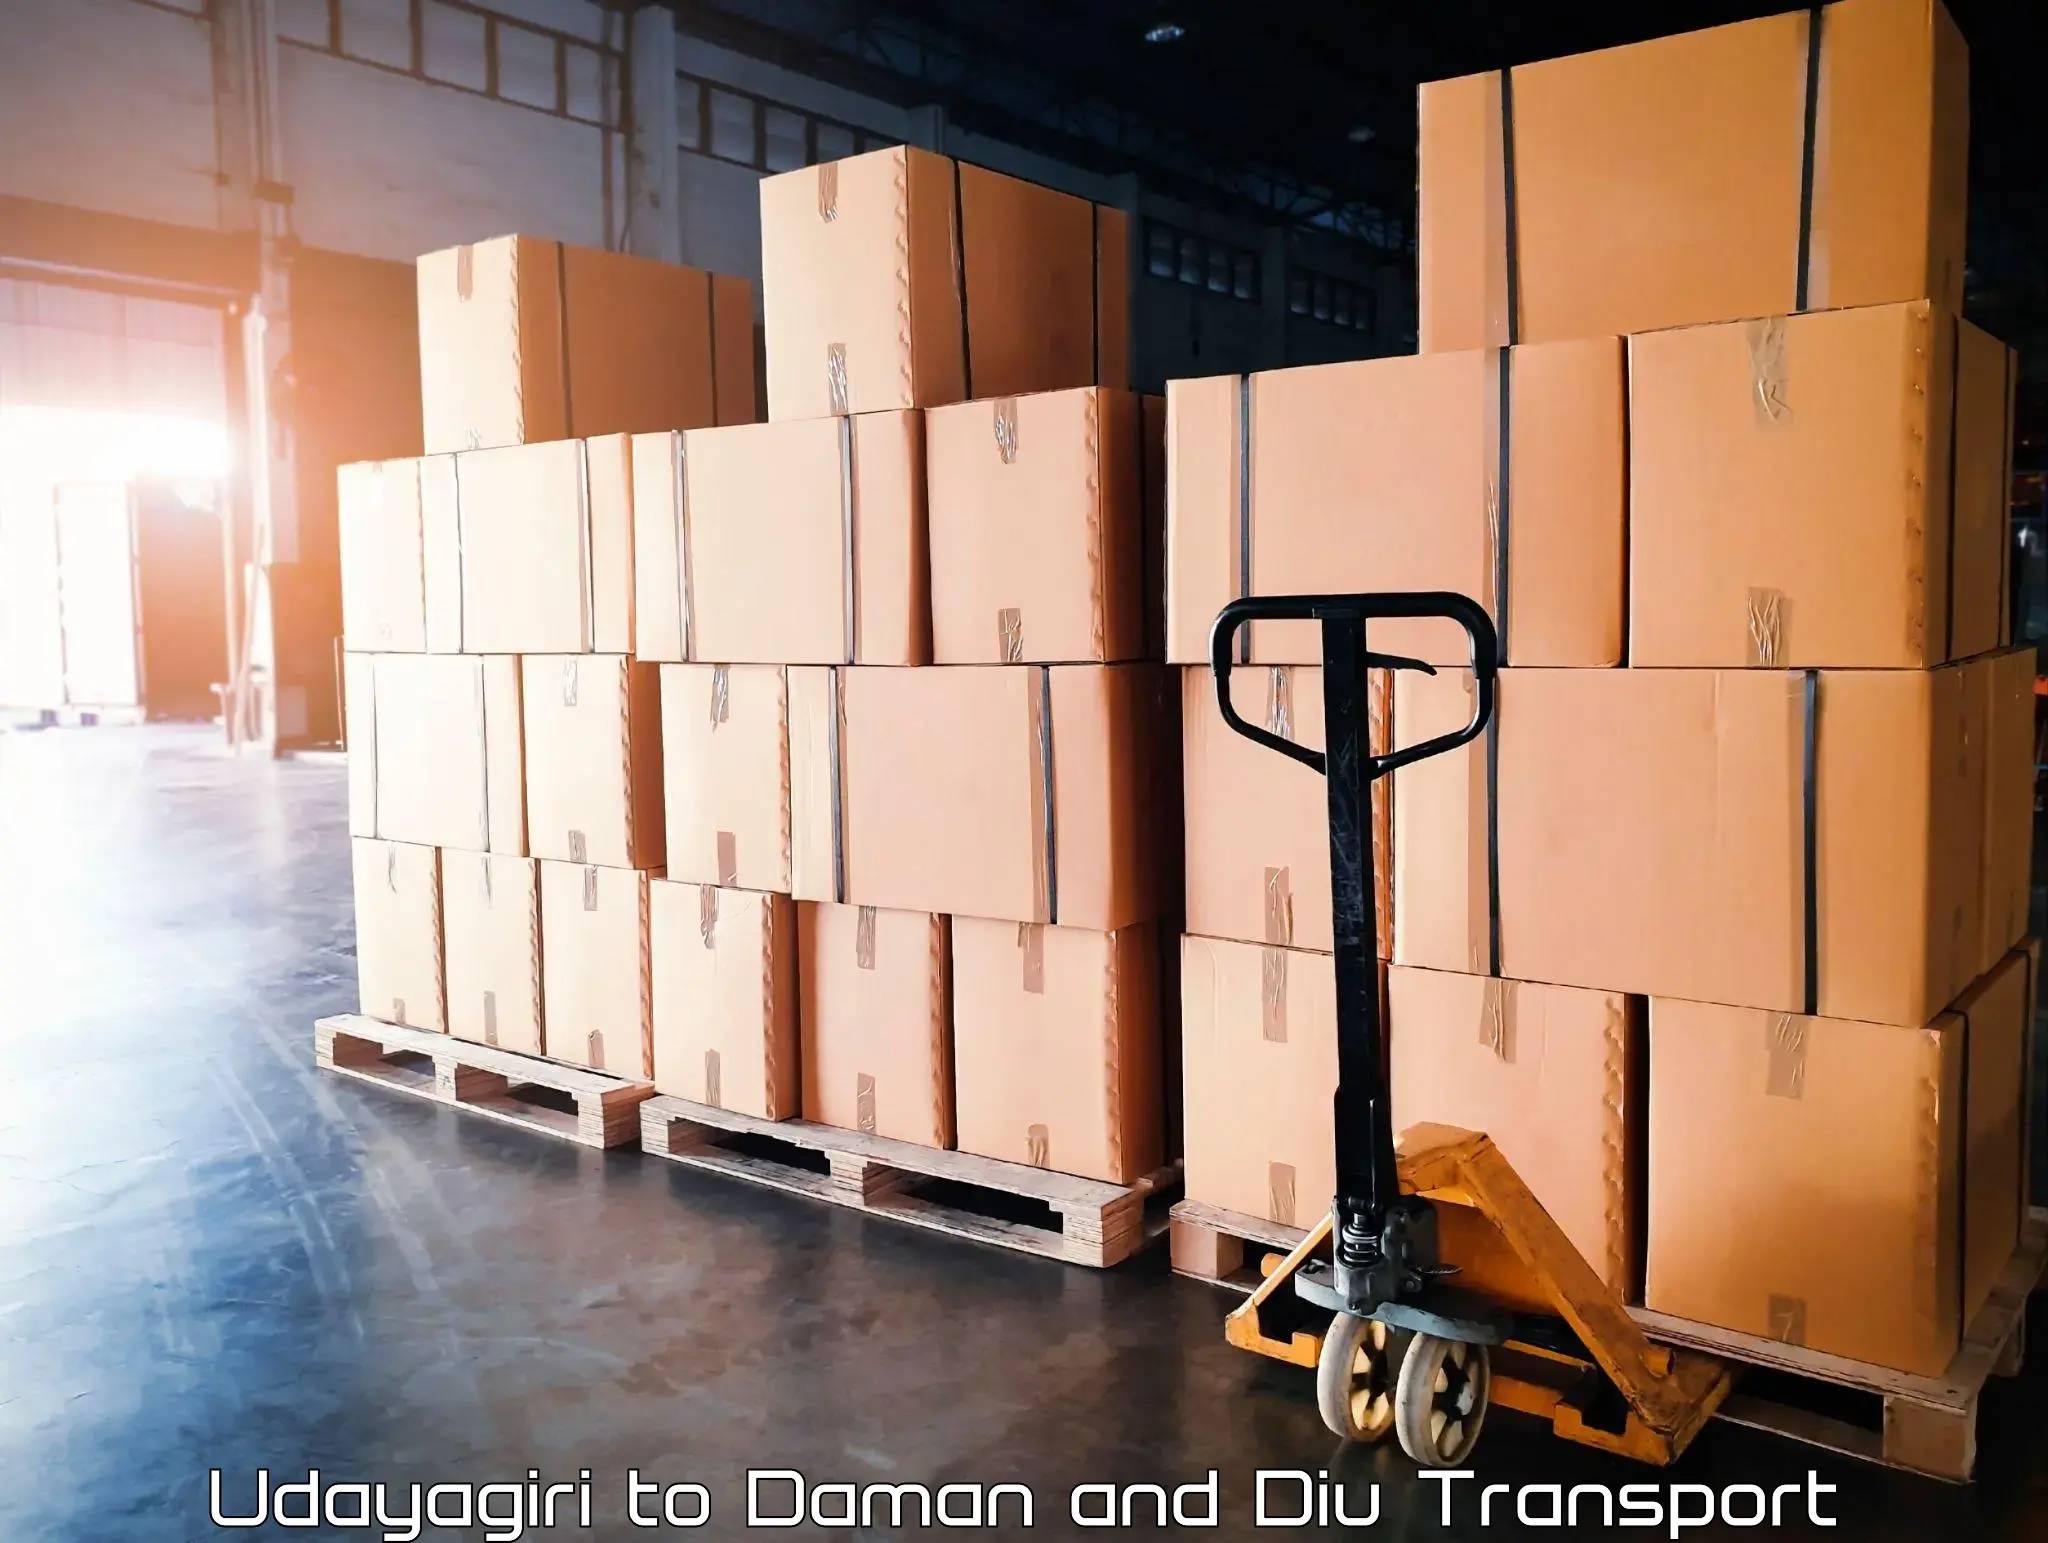 Container transport service Udayagiri to Daman and Diu